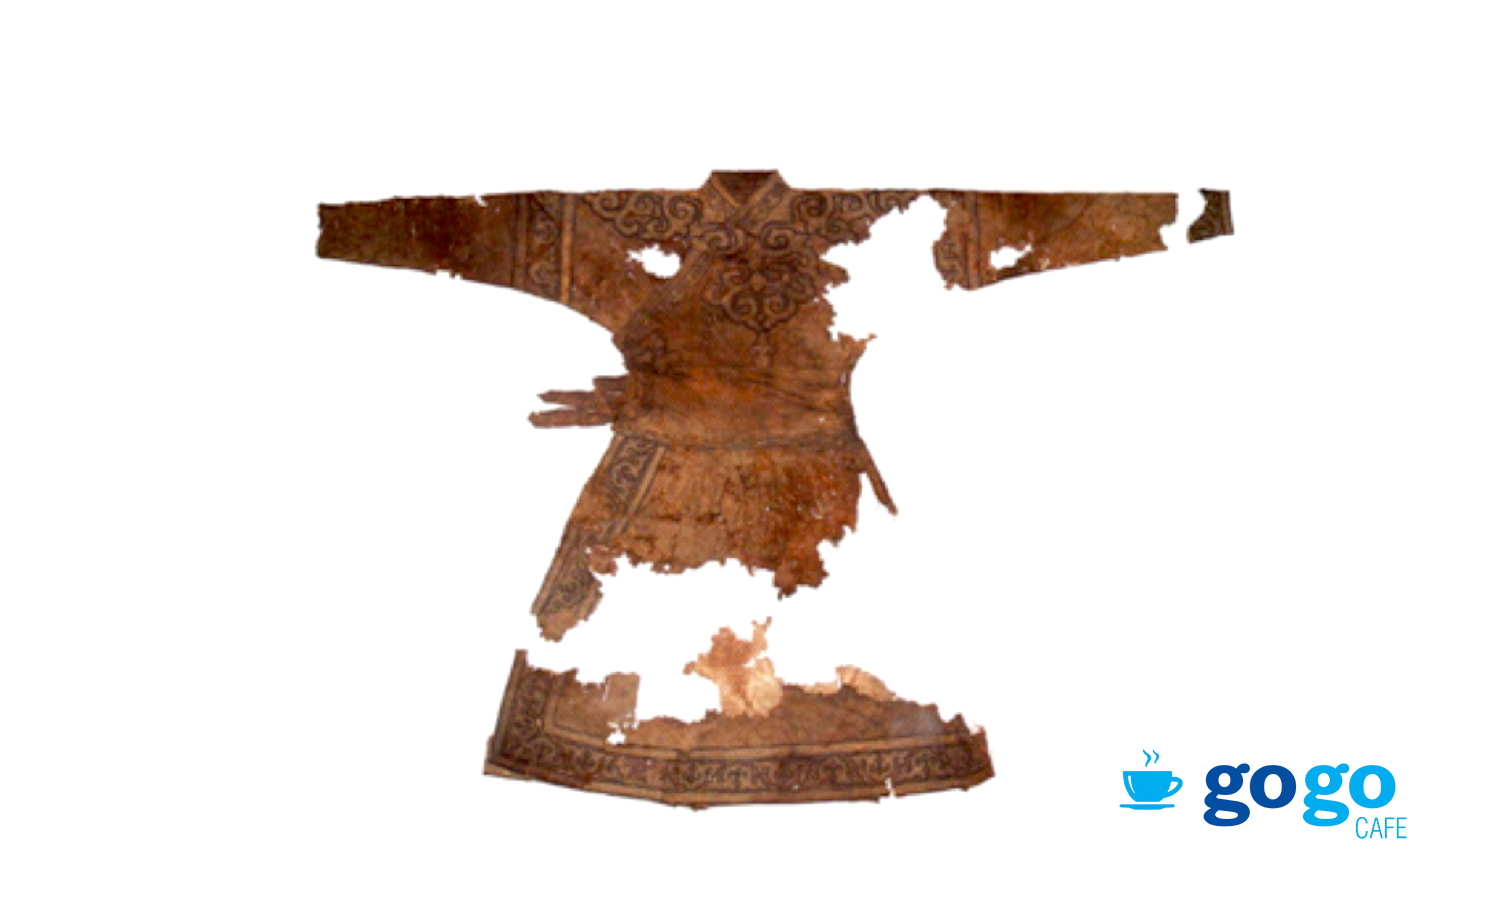 Монгол язгууртны дээл. Хэнтий, Дэлгэрхаан, Бухын хошуу. XIII-XIV зуун. Монгол улсын Үндэсний музей.